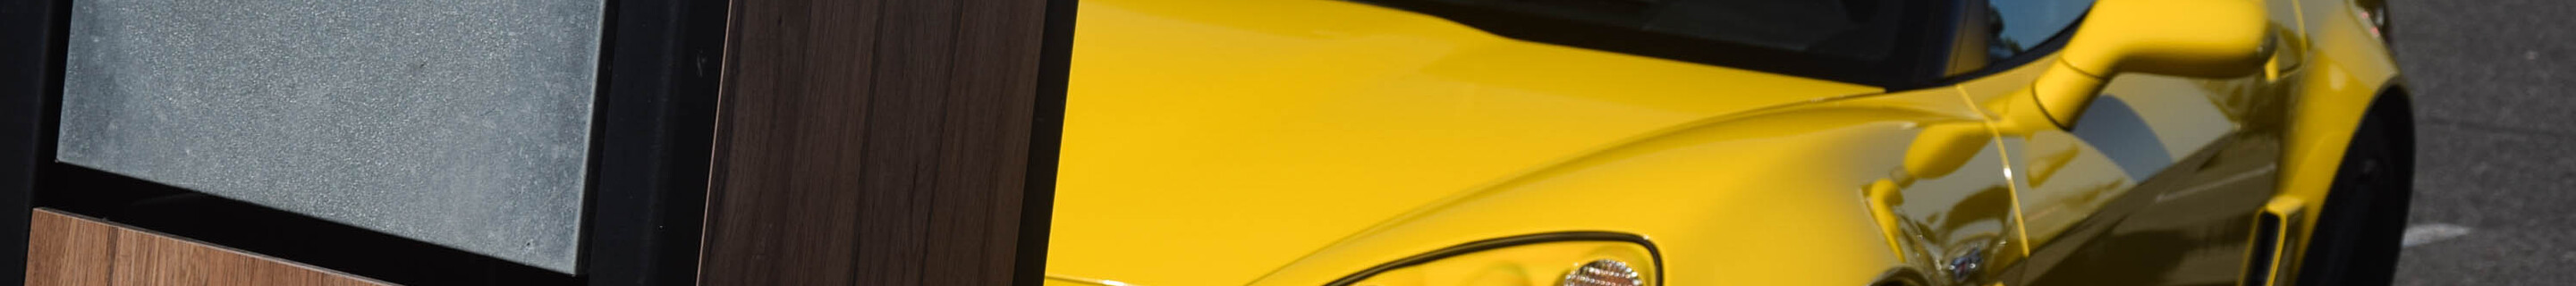 Chevrolet Corvette C6 Z06